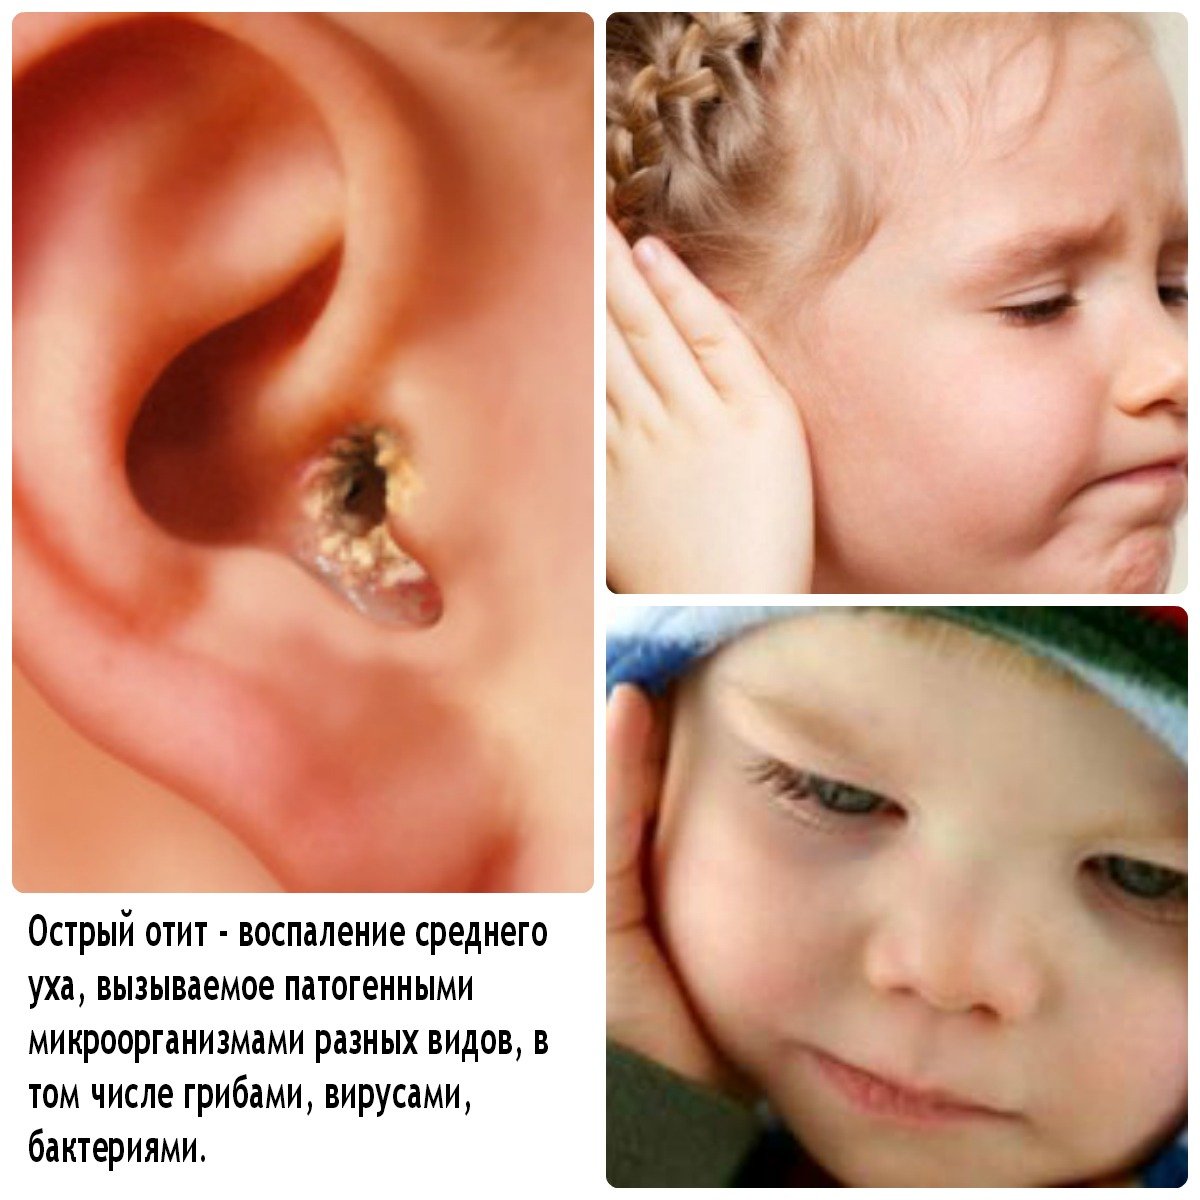 otitvnutrenniyfoto 7C36059C - Отит среднего уха: симптомы и лечение, фото